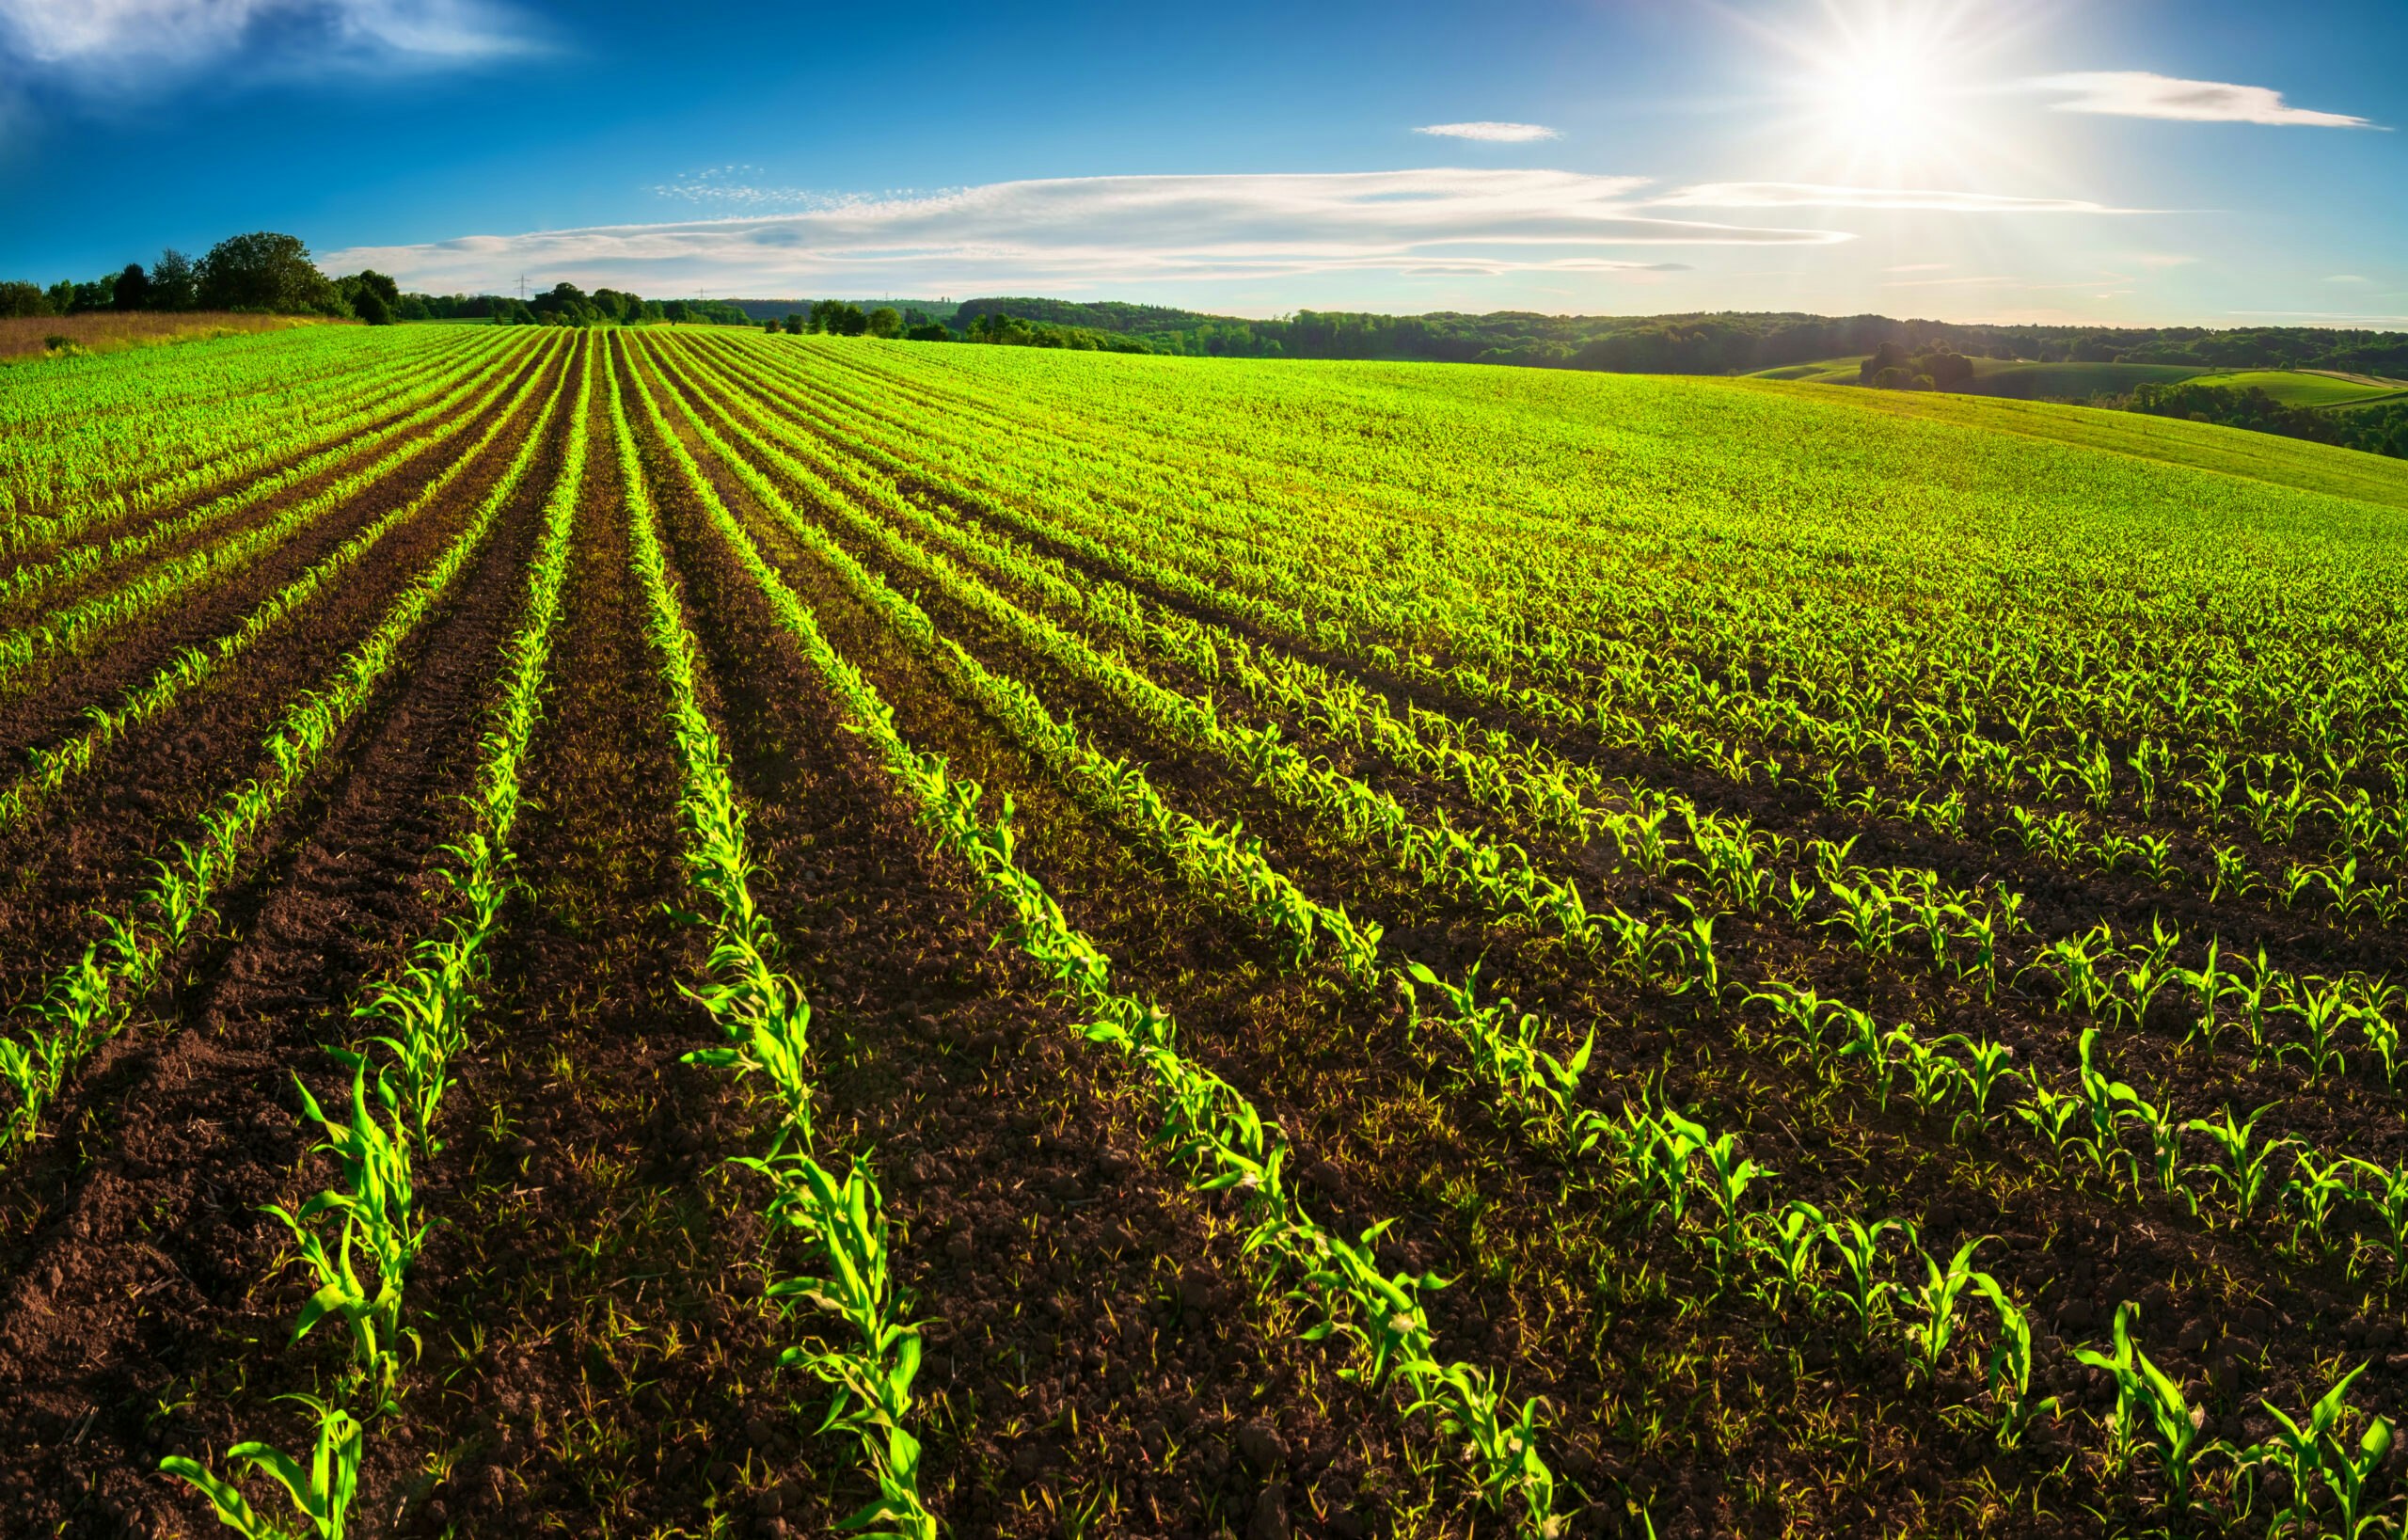 Verbraucher betrachten Landwirtschaft und Energie als Schlüsselelemente zur Begrenzung des Klimawandels